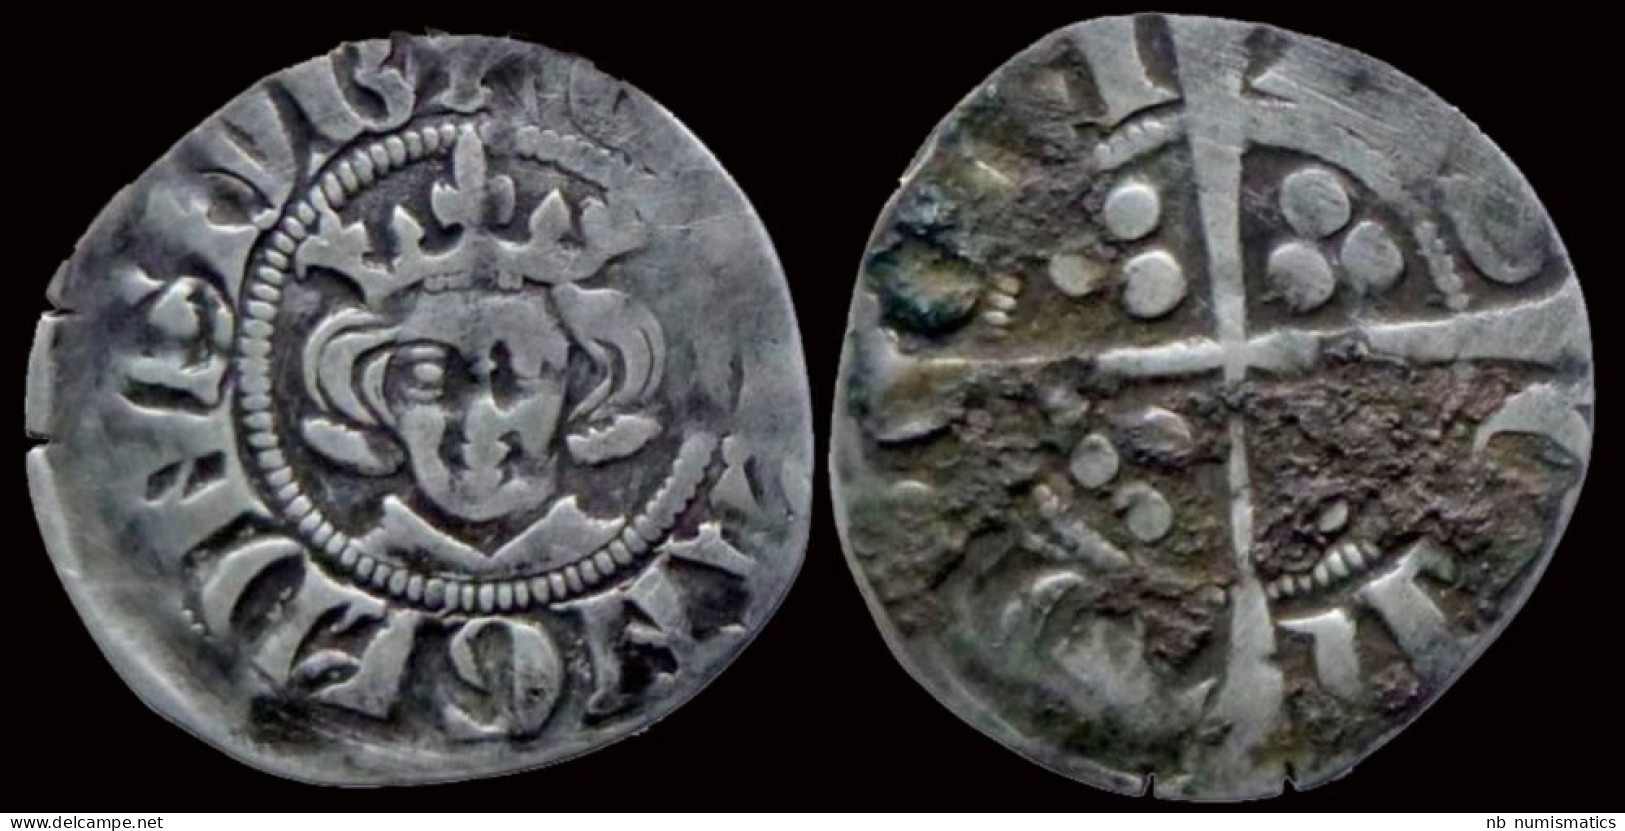 Great Britain Edward I AR Penny - …-1066 : Keltisch/Angelsaksisch